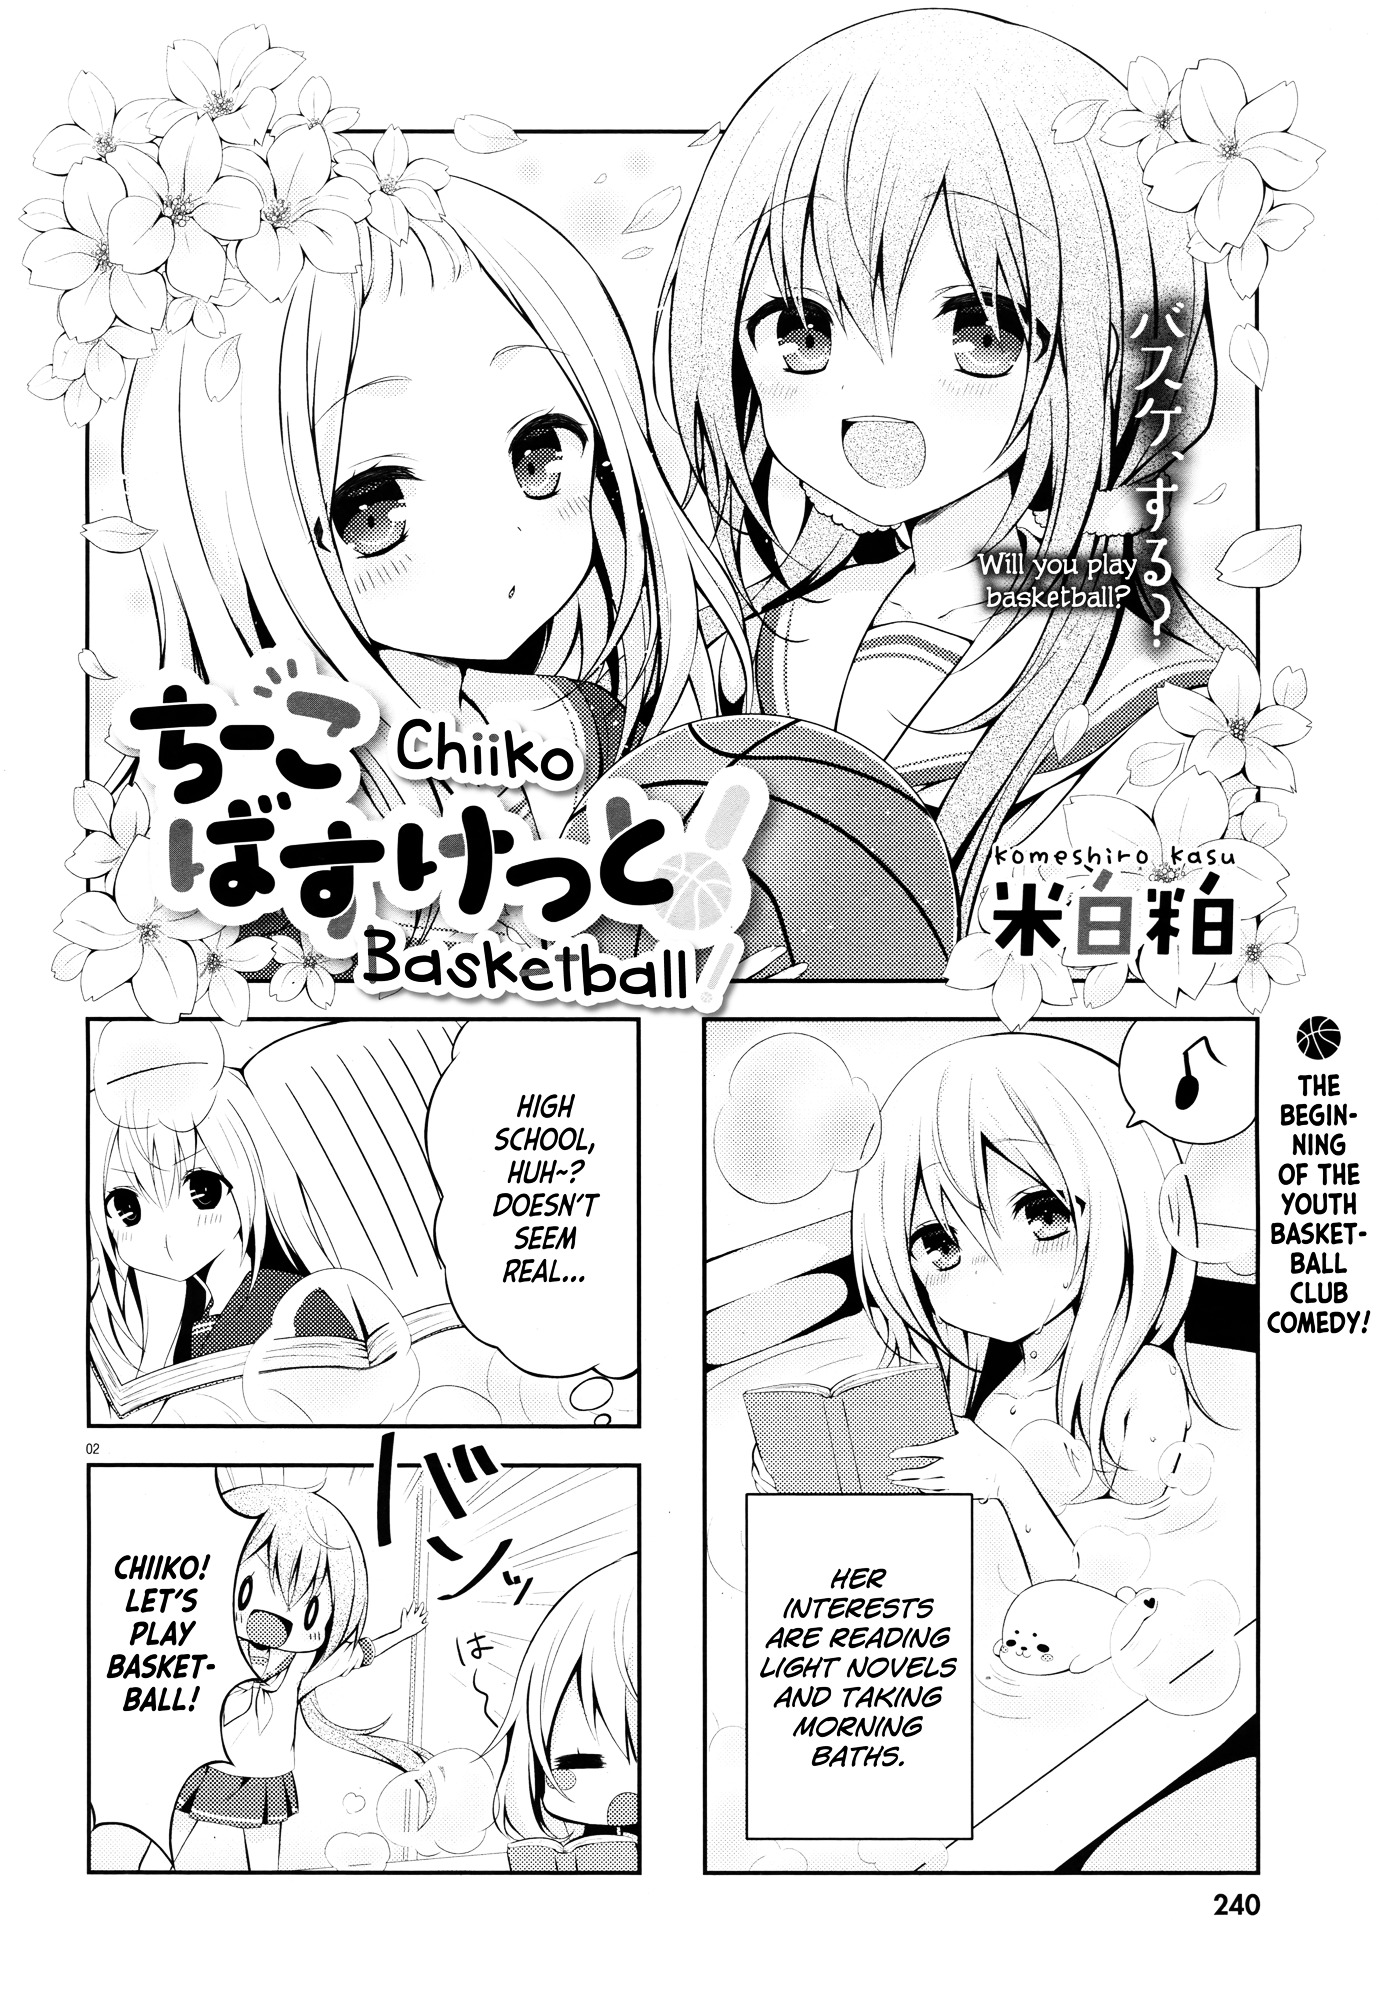 Chiiko Basketball! - Page 2